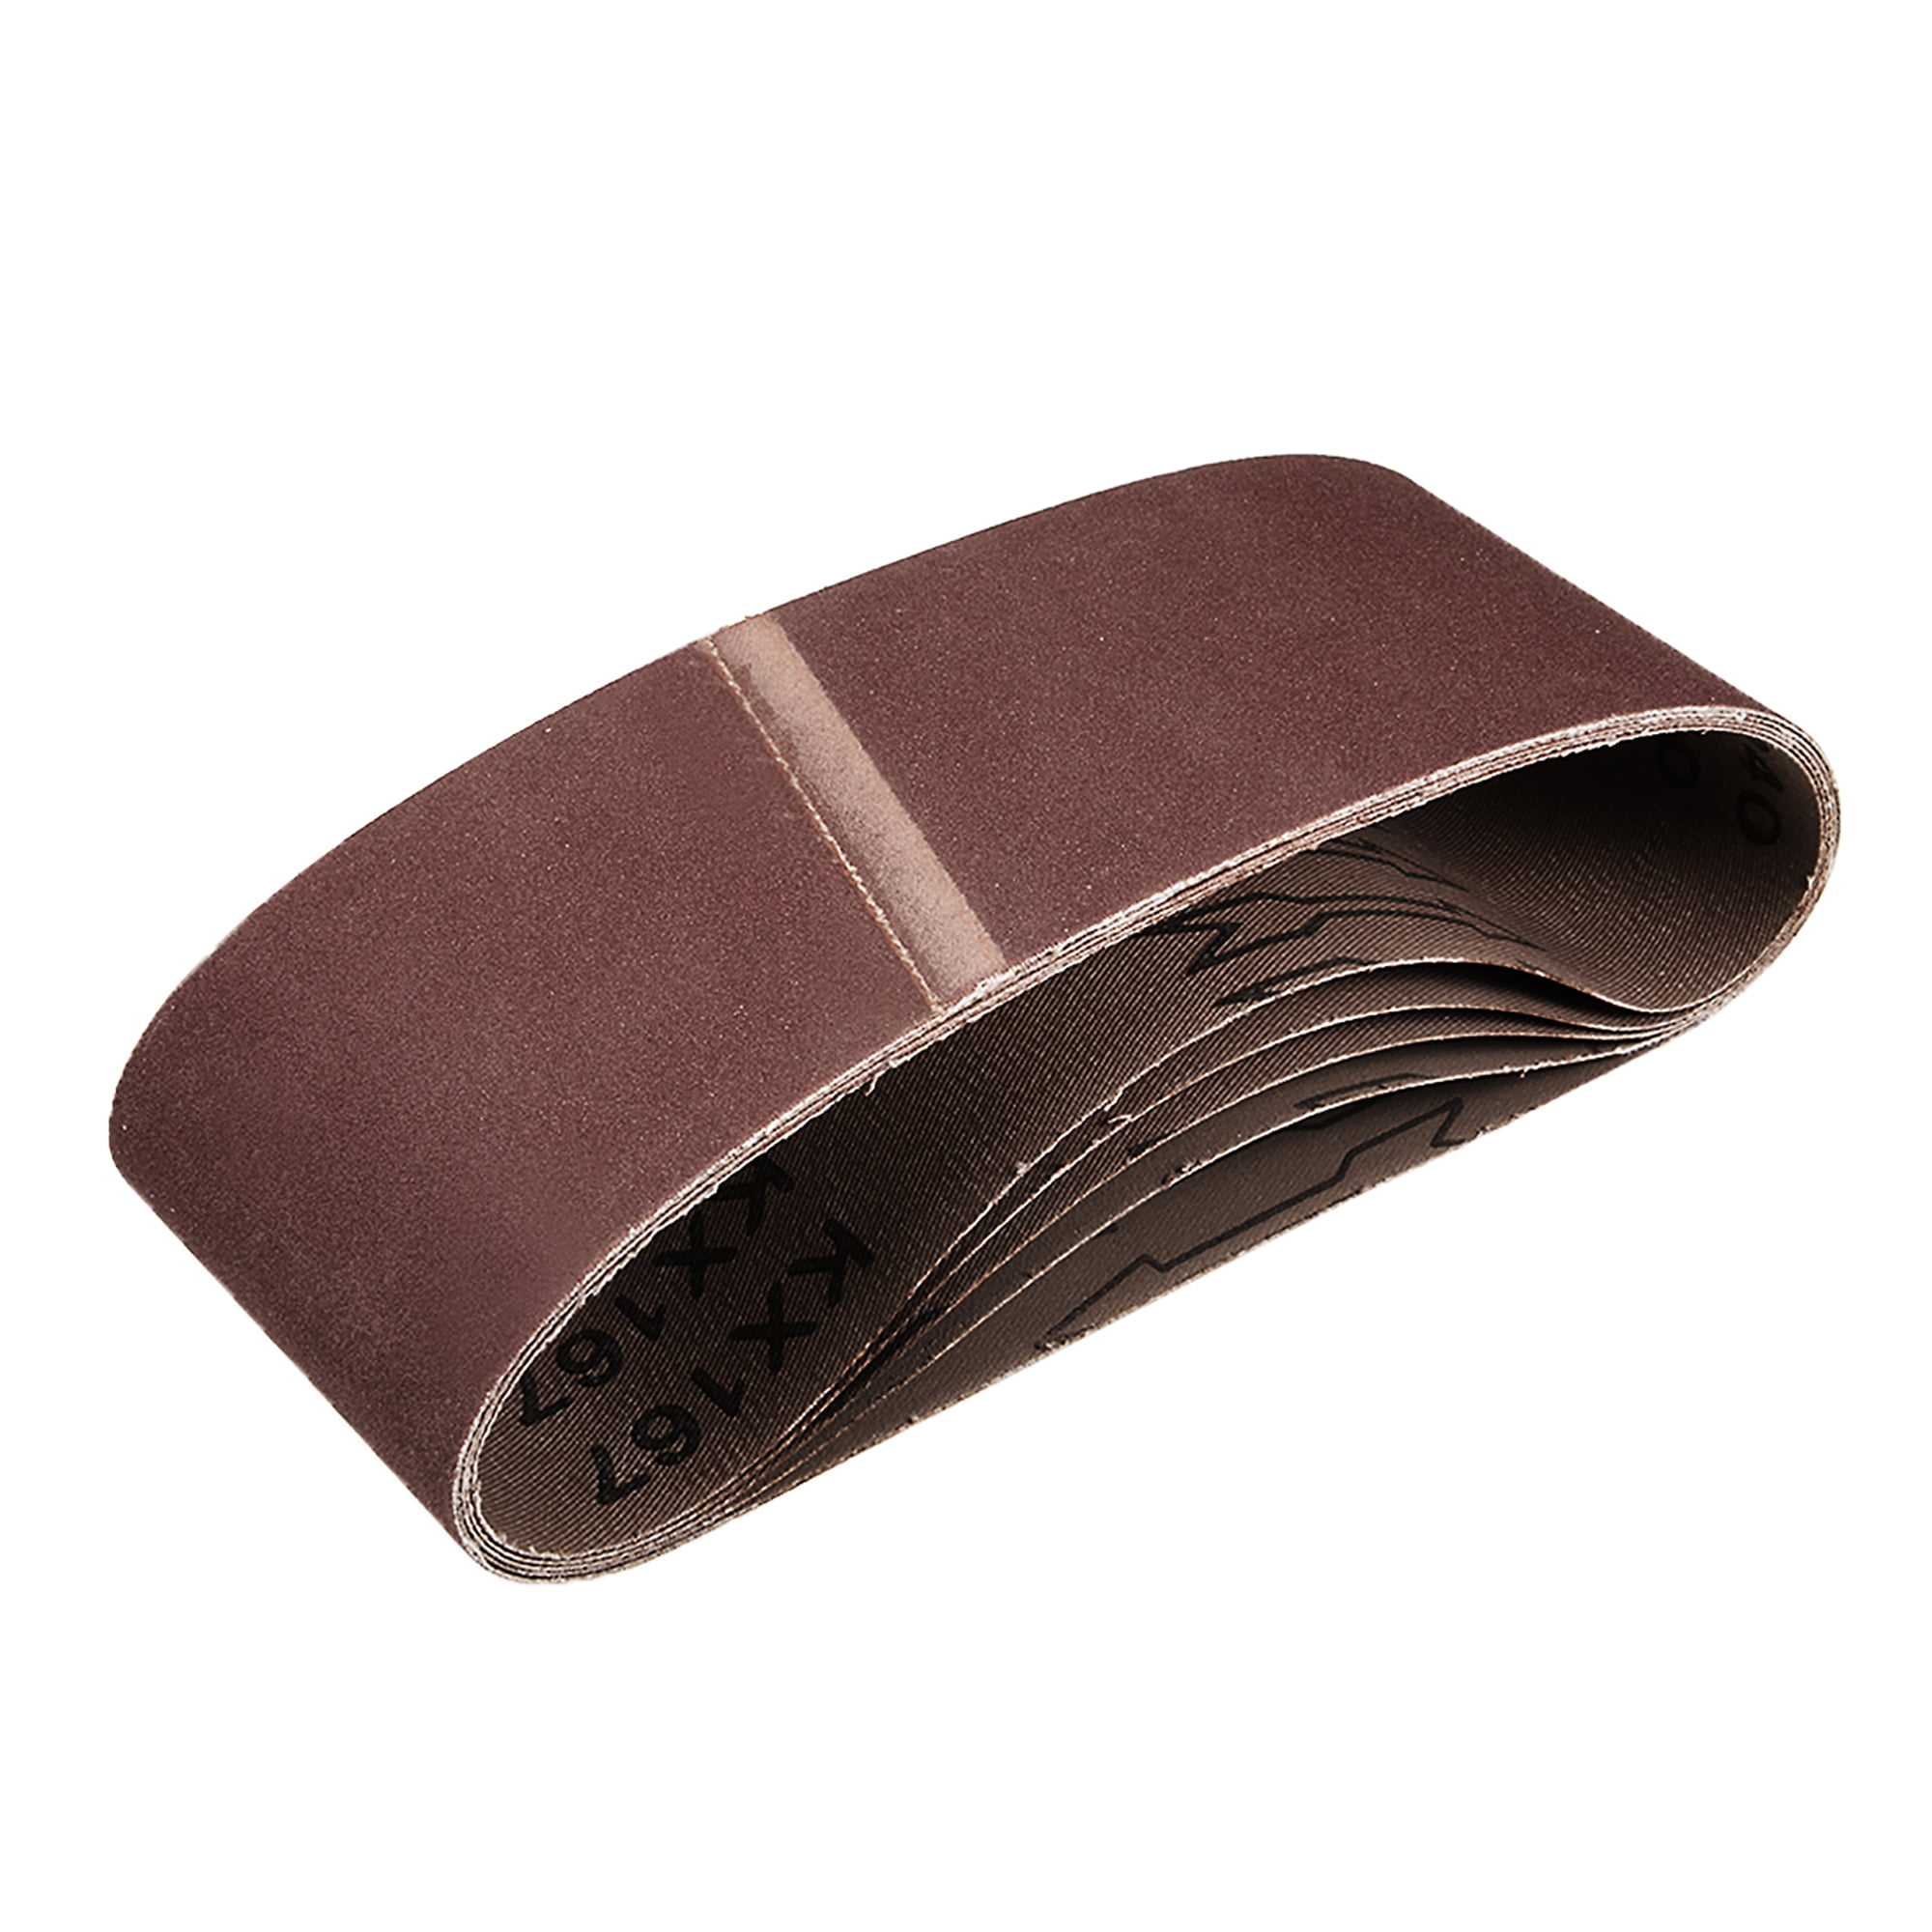 uxcell 3-inch x 21-inch 400-Grits Sanding Belt Aluminum Oxide Sand Belts for Belt Sander 5pcs 